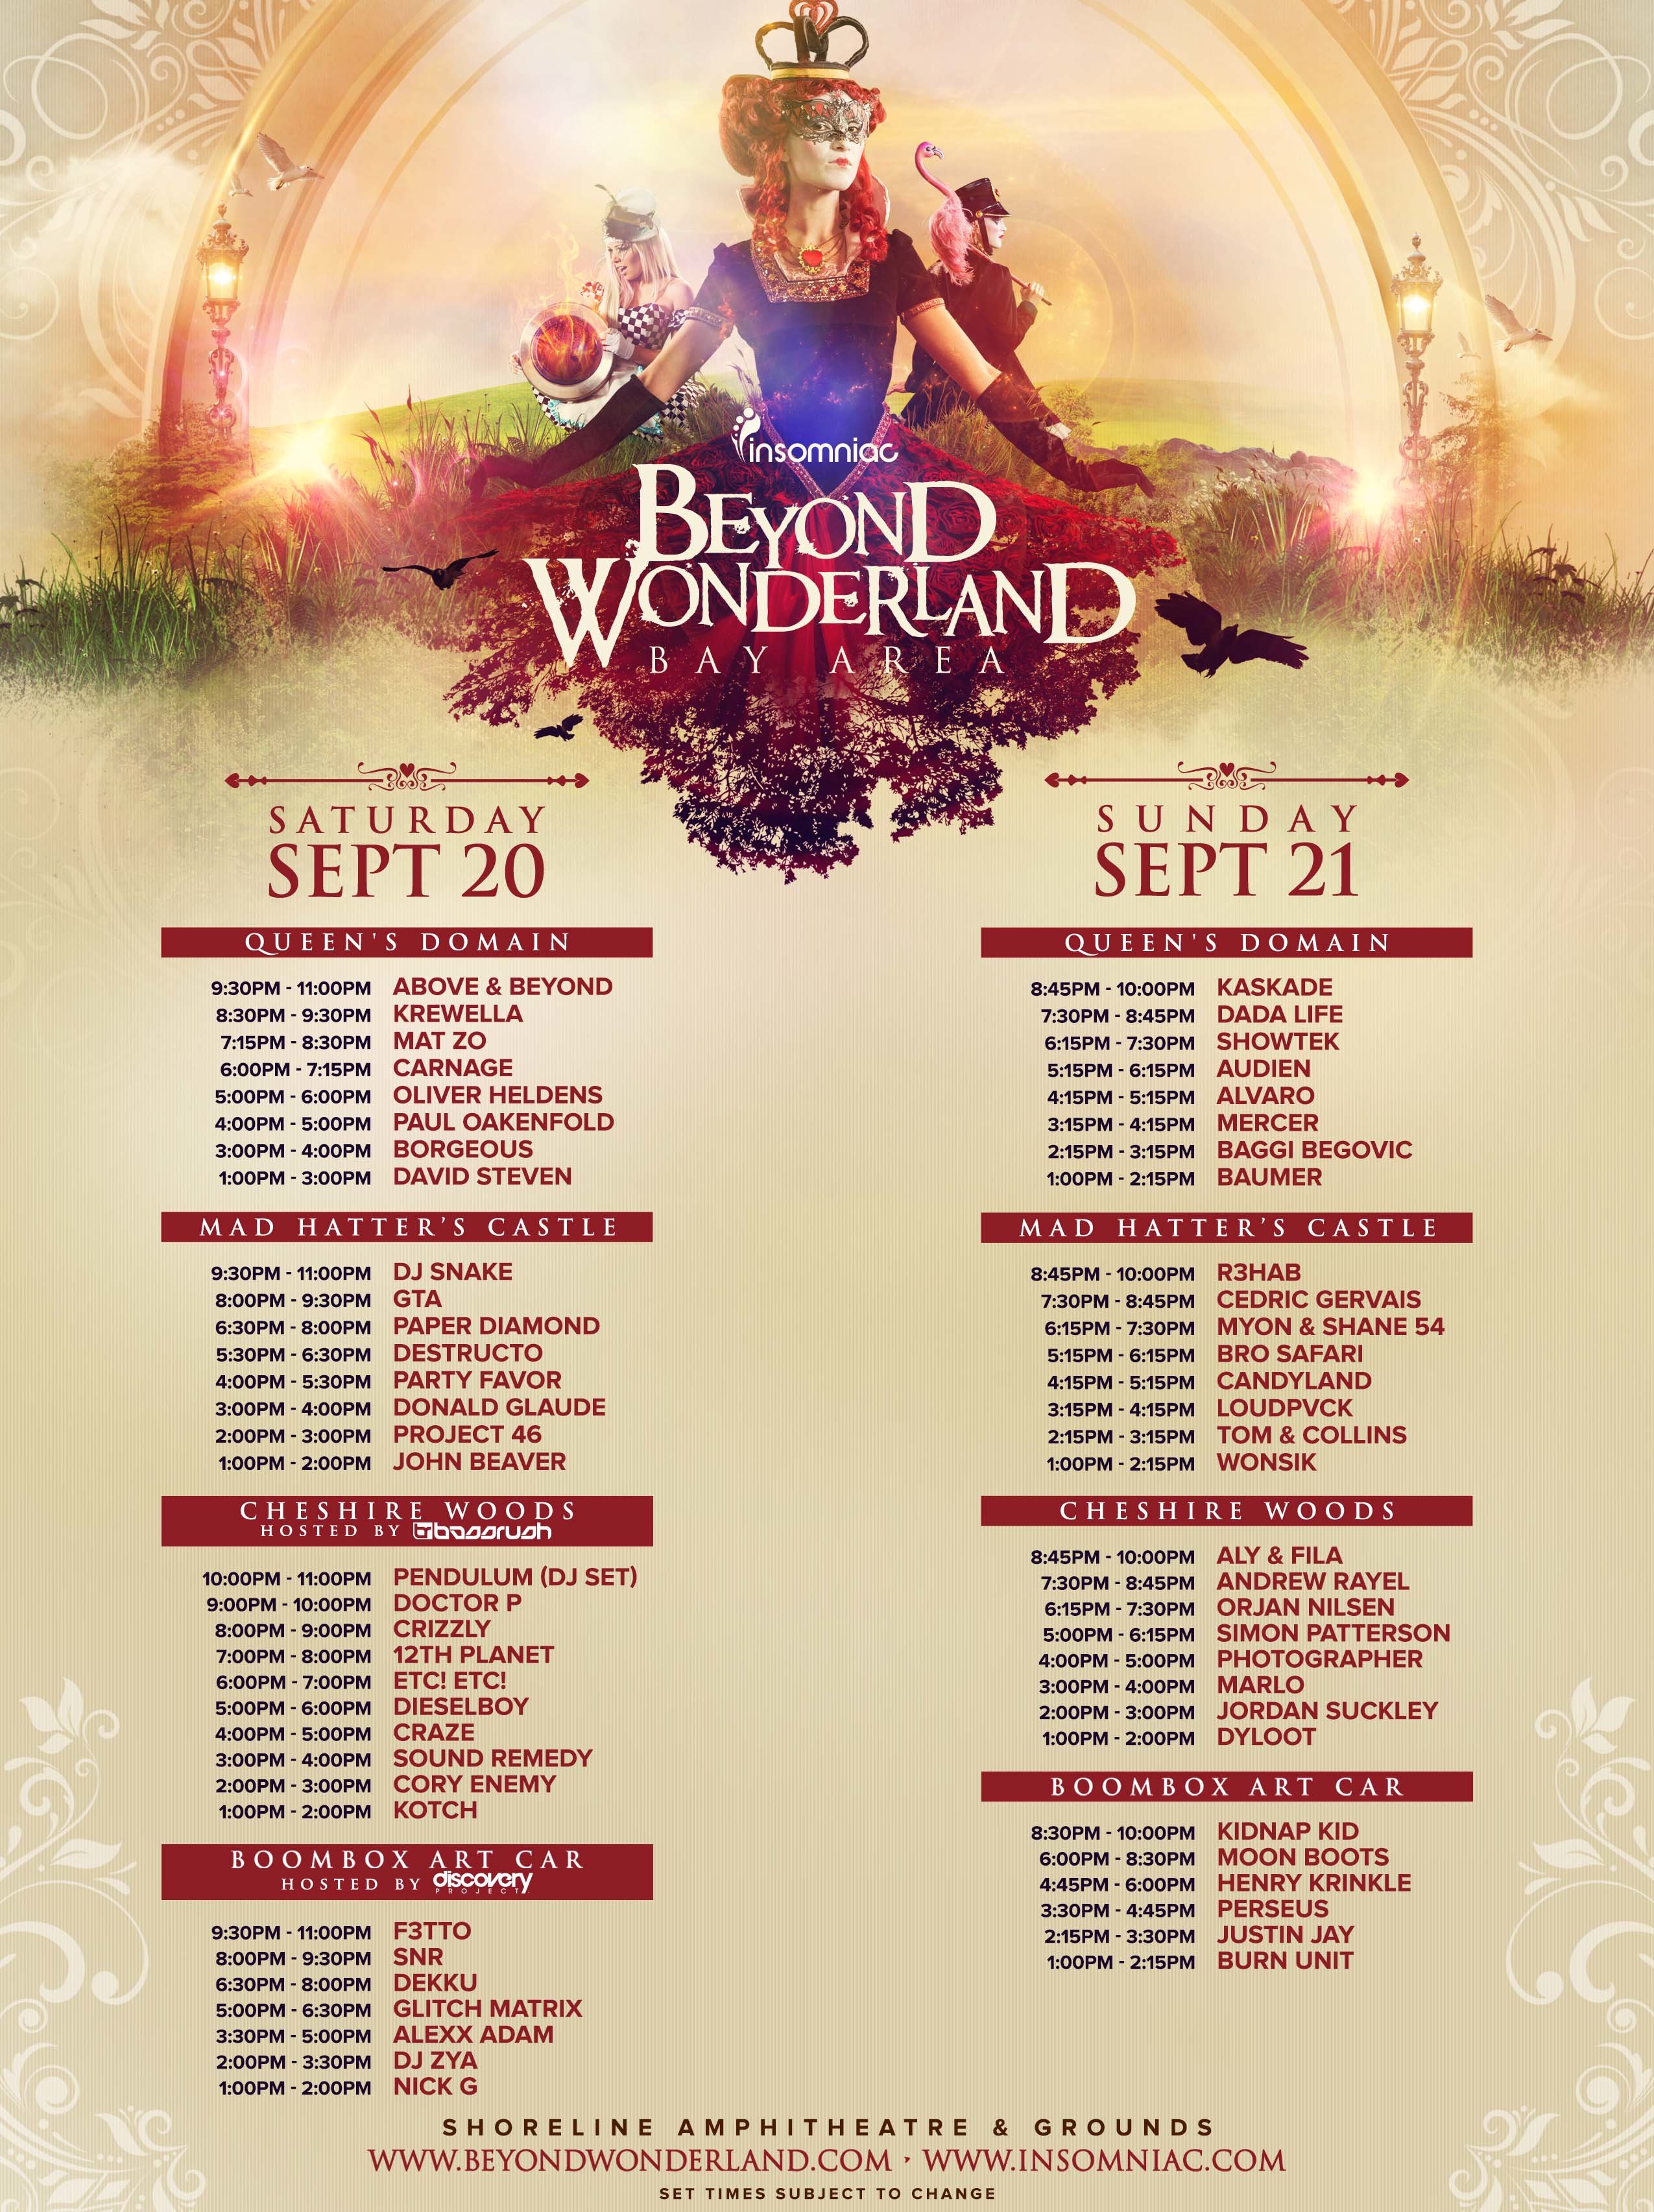 Beyond Wonderland 2014 состоялось на Bay Area (США) 20-21 сентября 